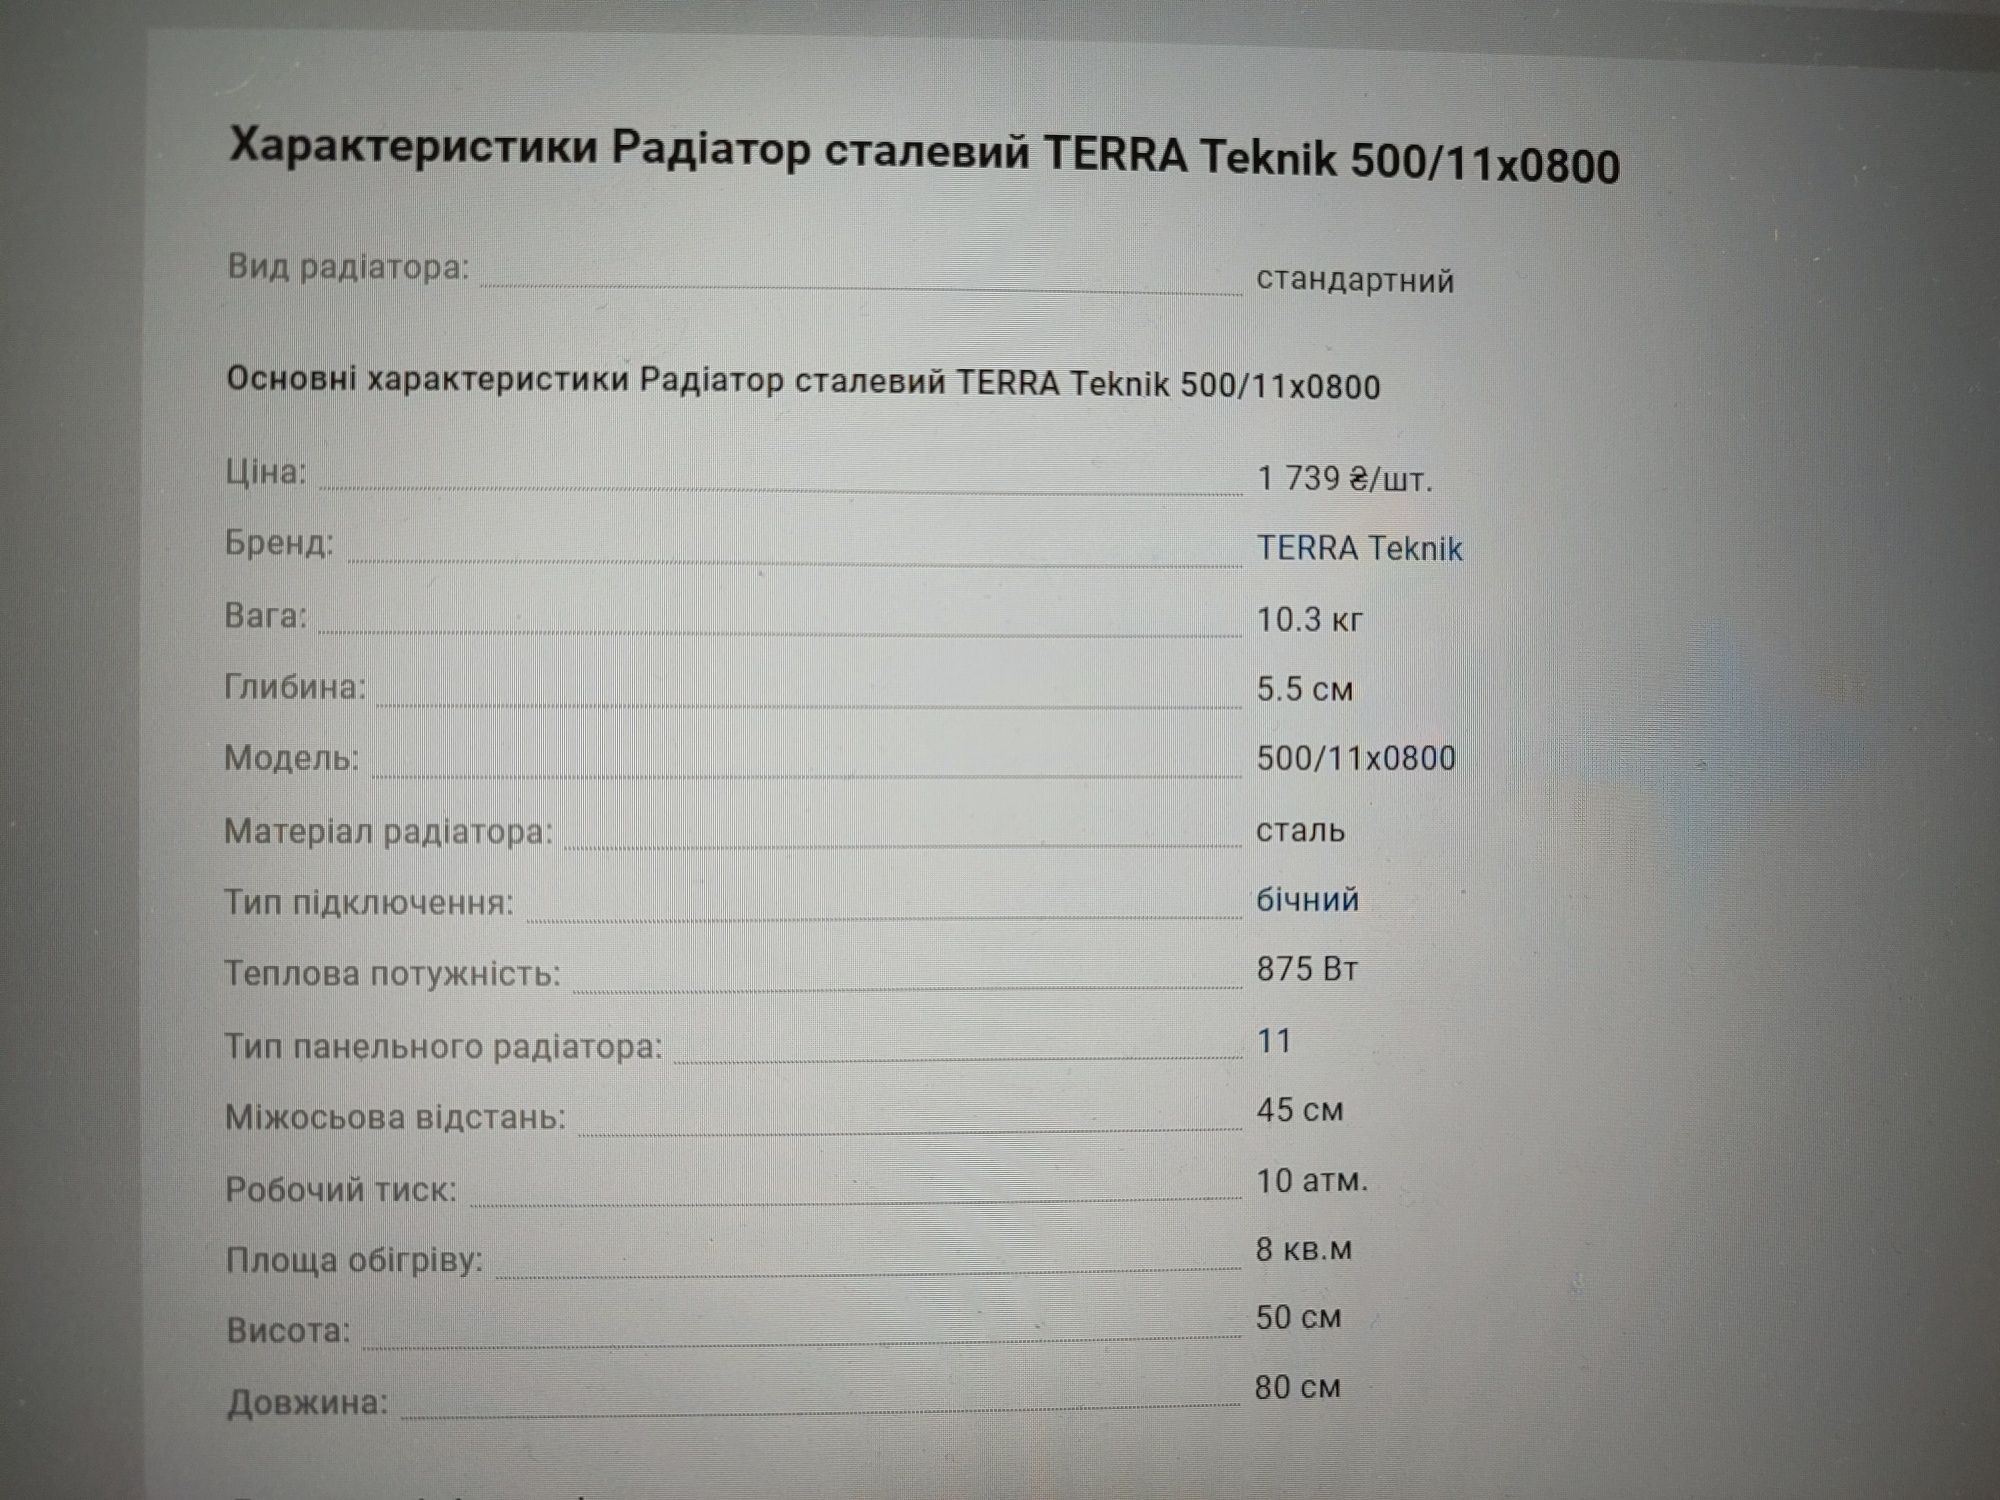 Сталевий радіатор TERRA Teknik CТАЛЬ,11 к 500x800